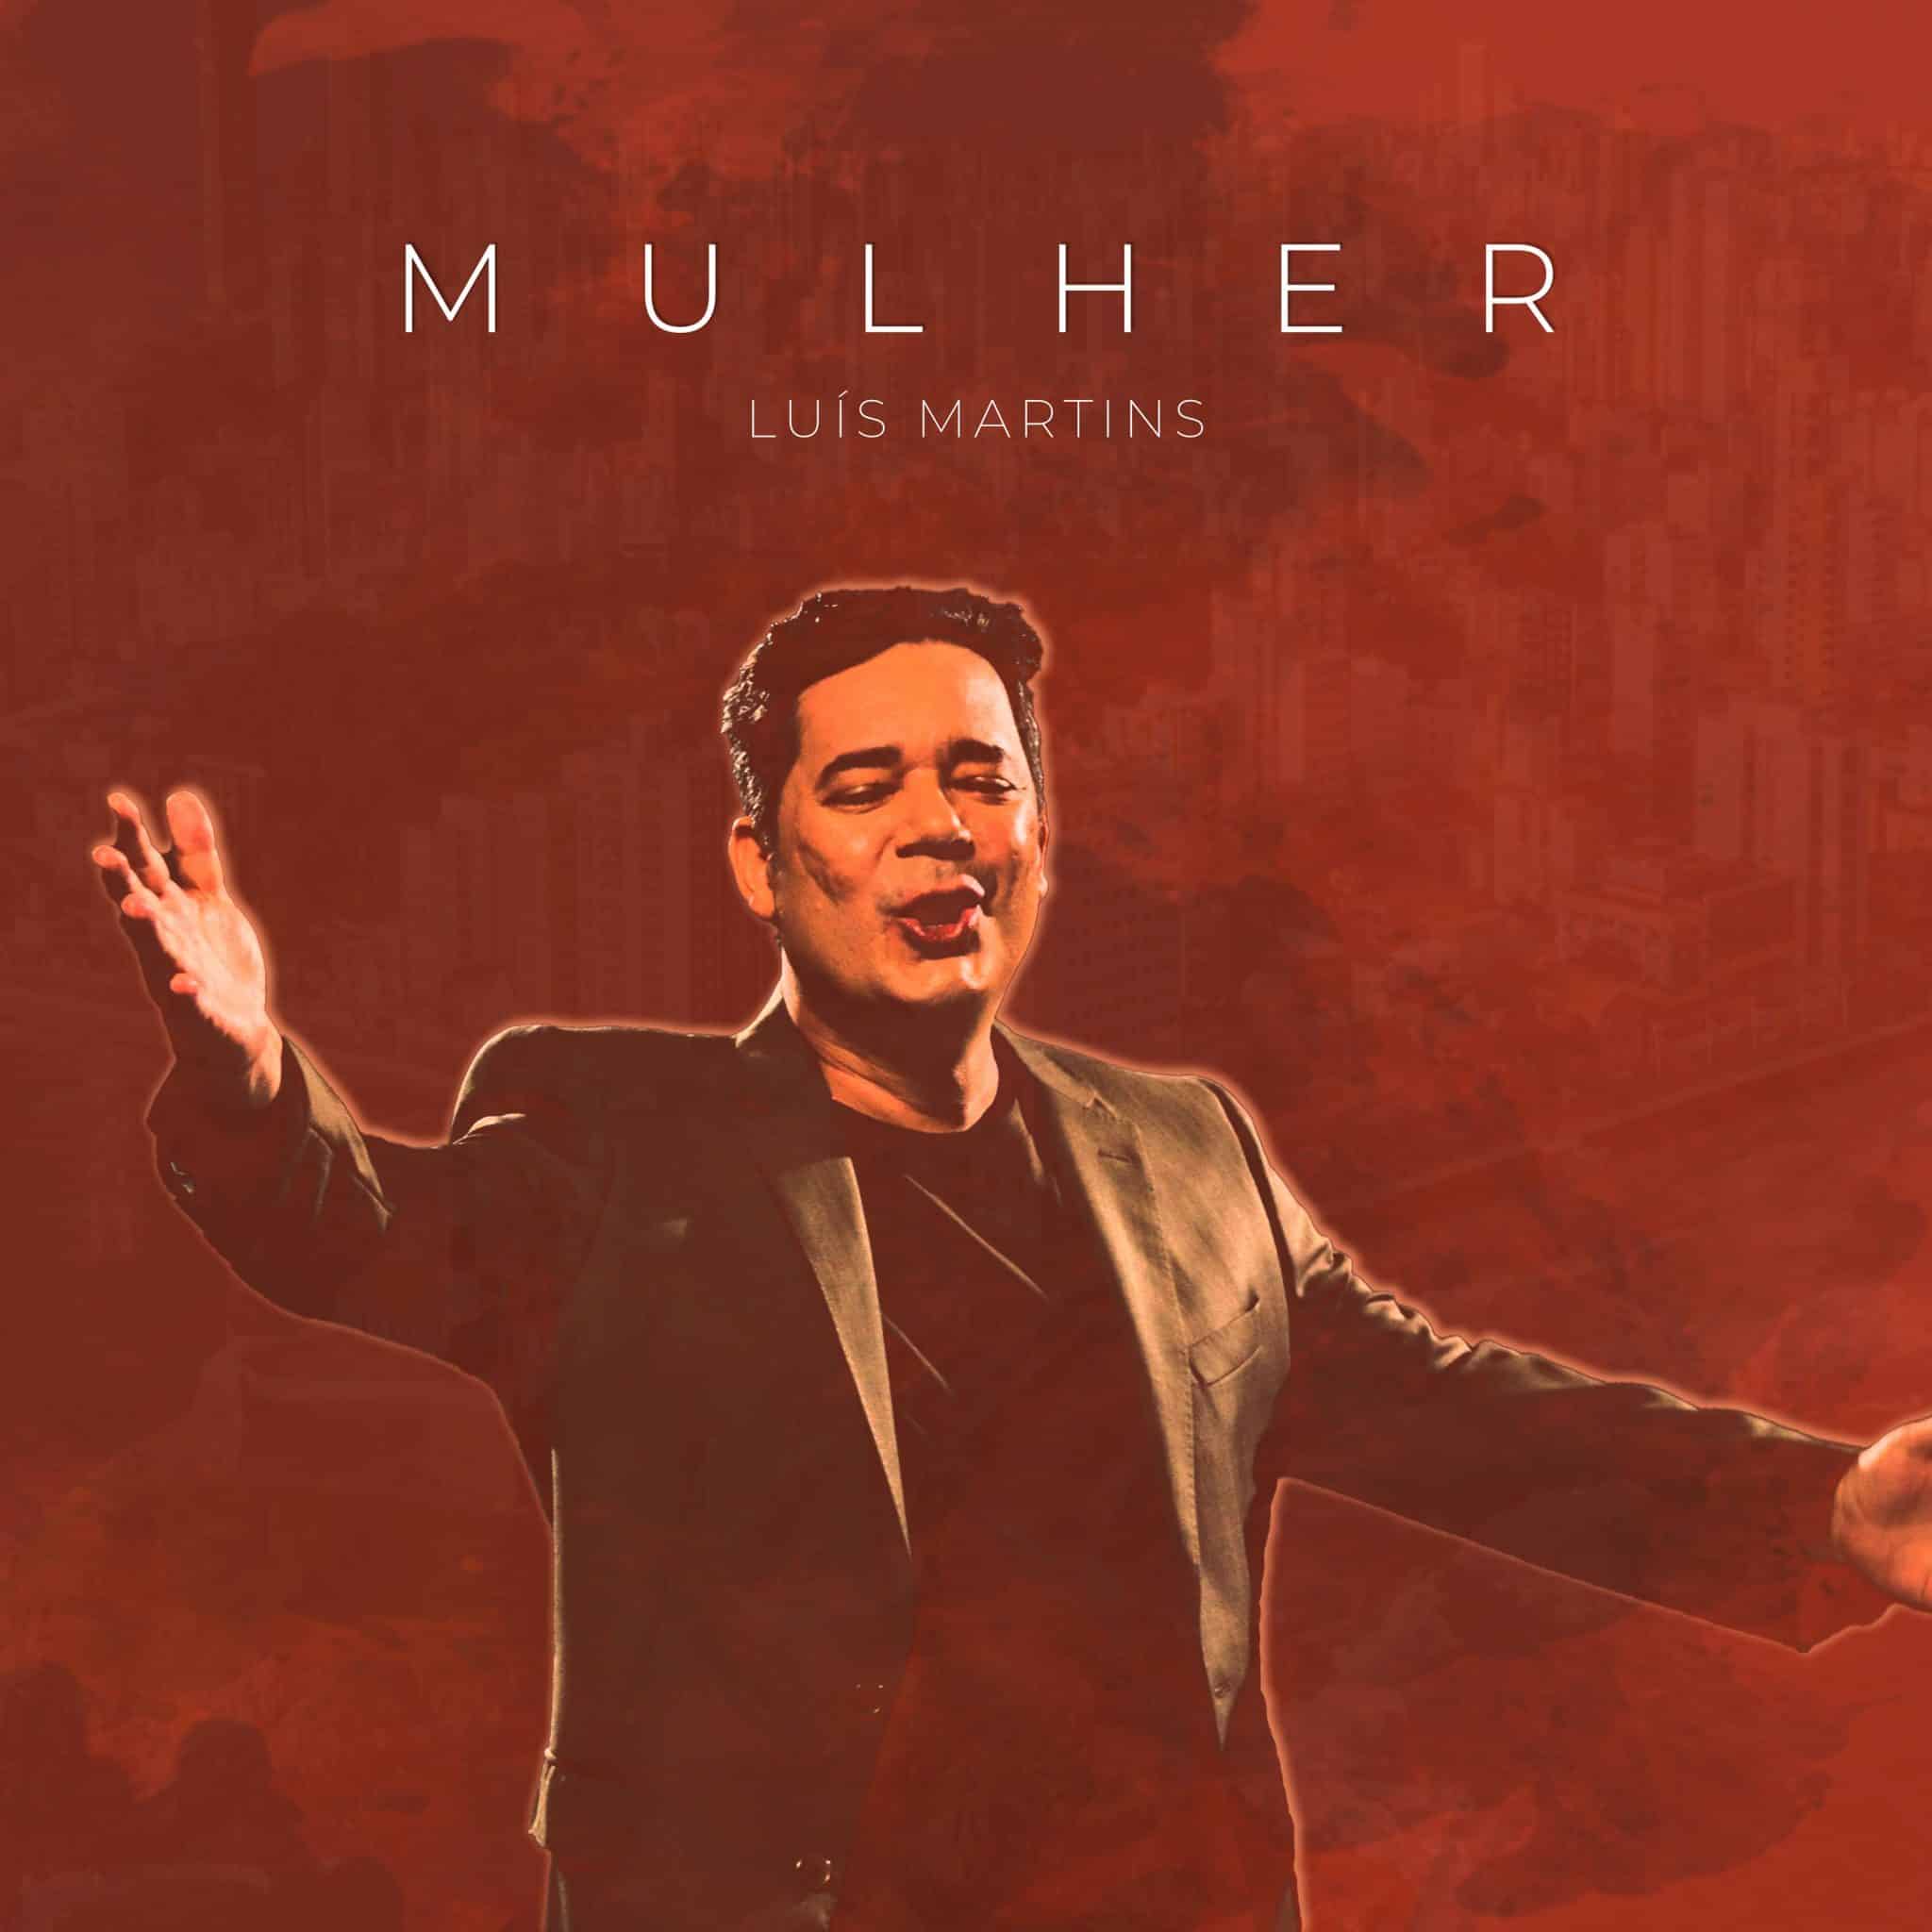 revistaprosaversoearte.com - Luís Martins cantor e compositor baiano lança single 'Mulher'